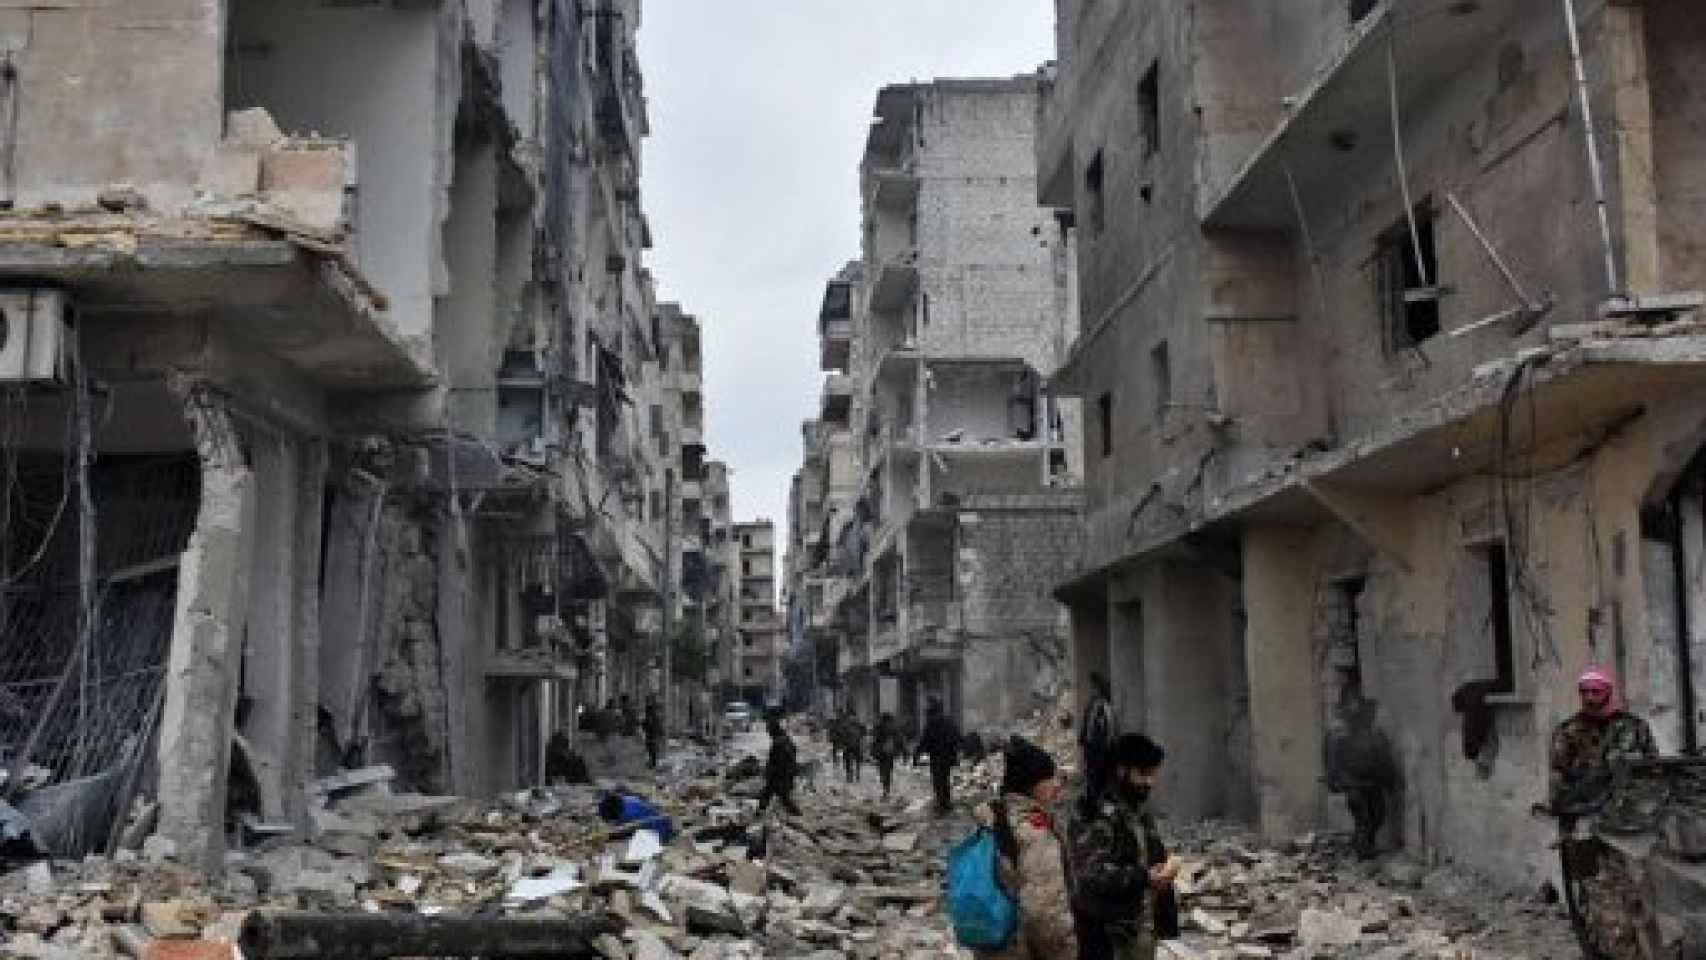 Image: País en llamas. Los sirios en la revolución y en la guerra